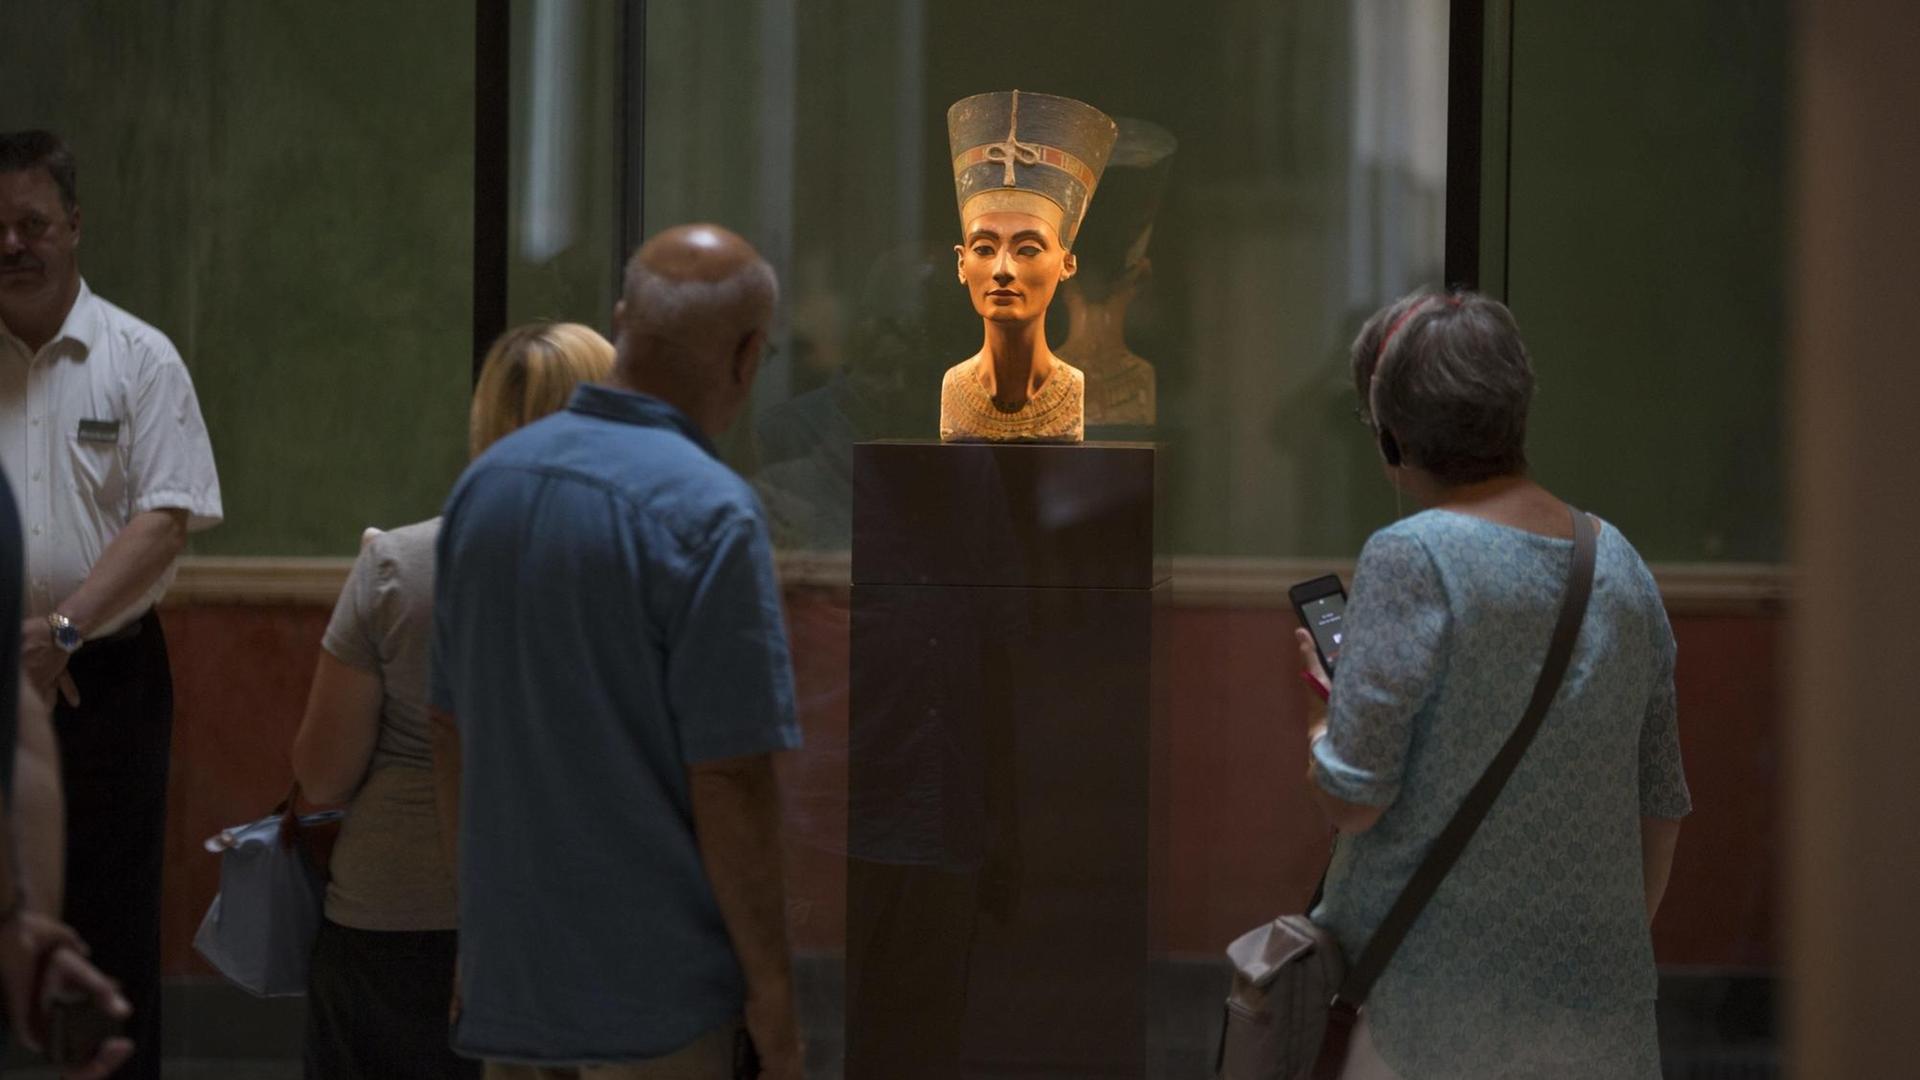 Das Neue Museum auf der Museumsinsel in Berlin. Das Foto zeigt Touristen an der weltberühmten, ca. 3000 Jahre alten, Büste der Pharaonengattin Nofretete.